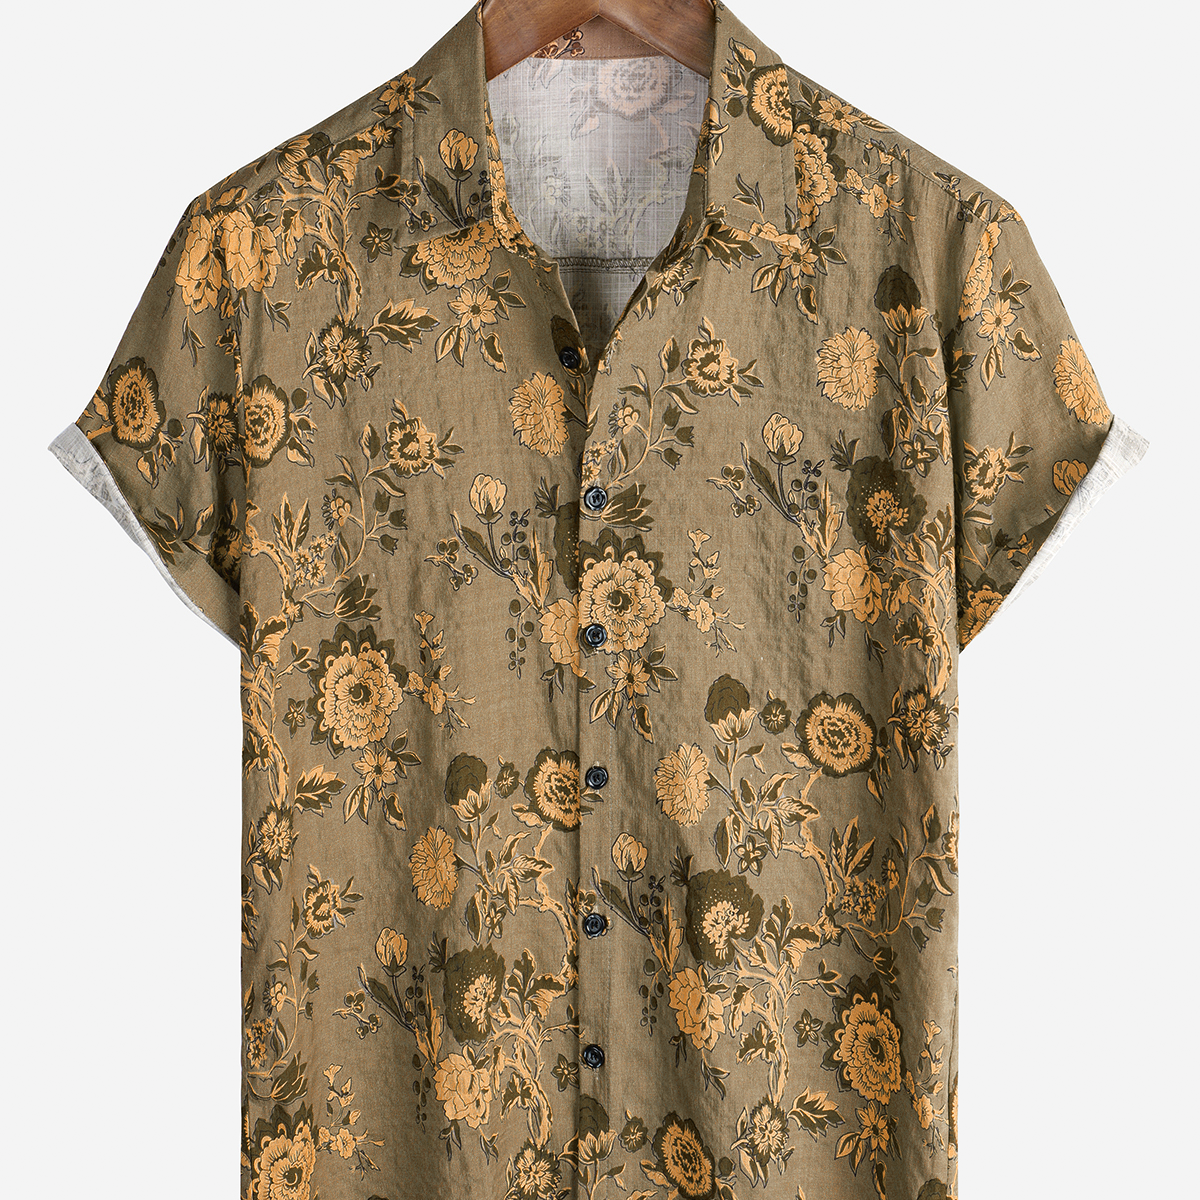 Men's Floral Hawaiian Cotton Vintage Short Sleeve Button Up Summer Shirt